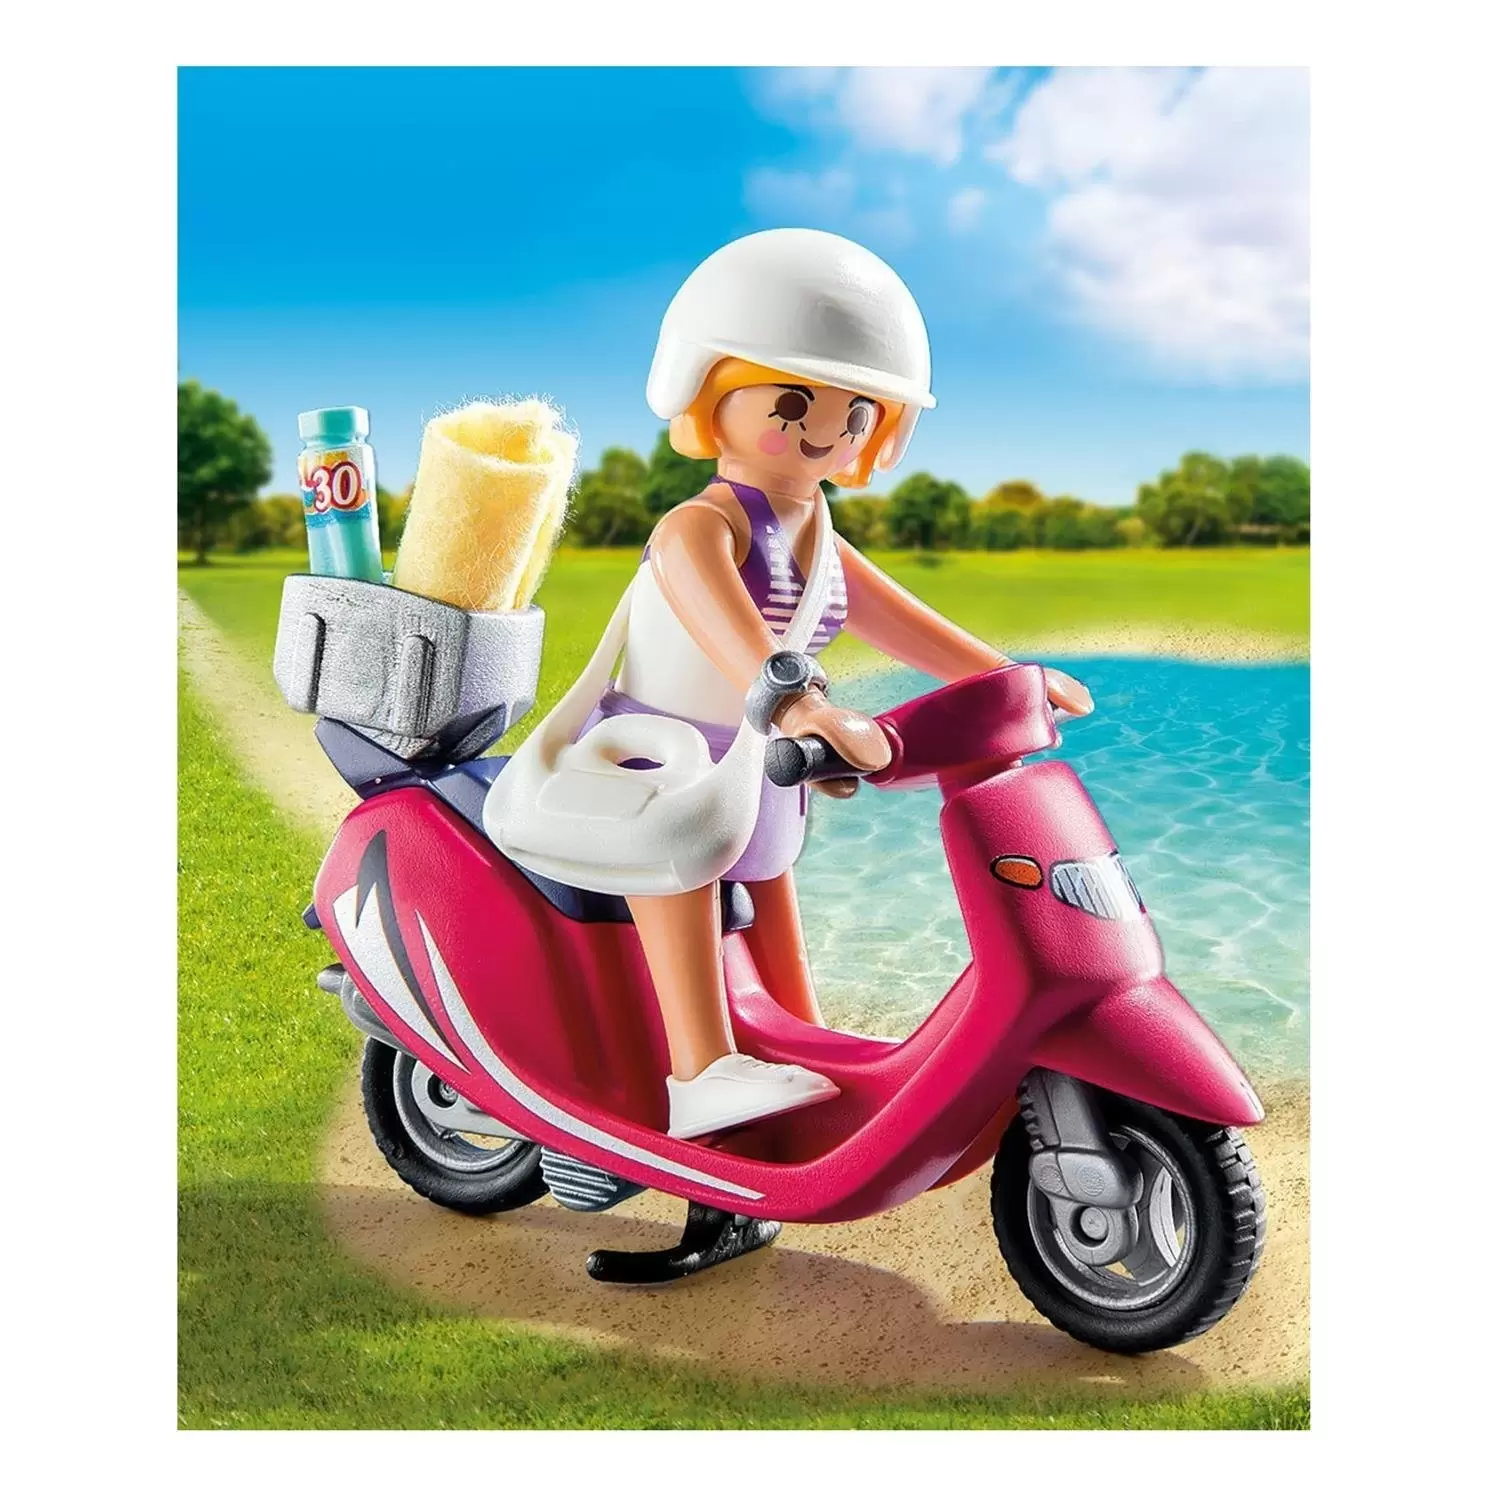 Playmobil SpecialPlus - Beach Girl with Motor Bike